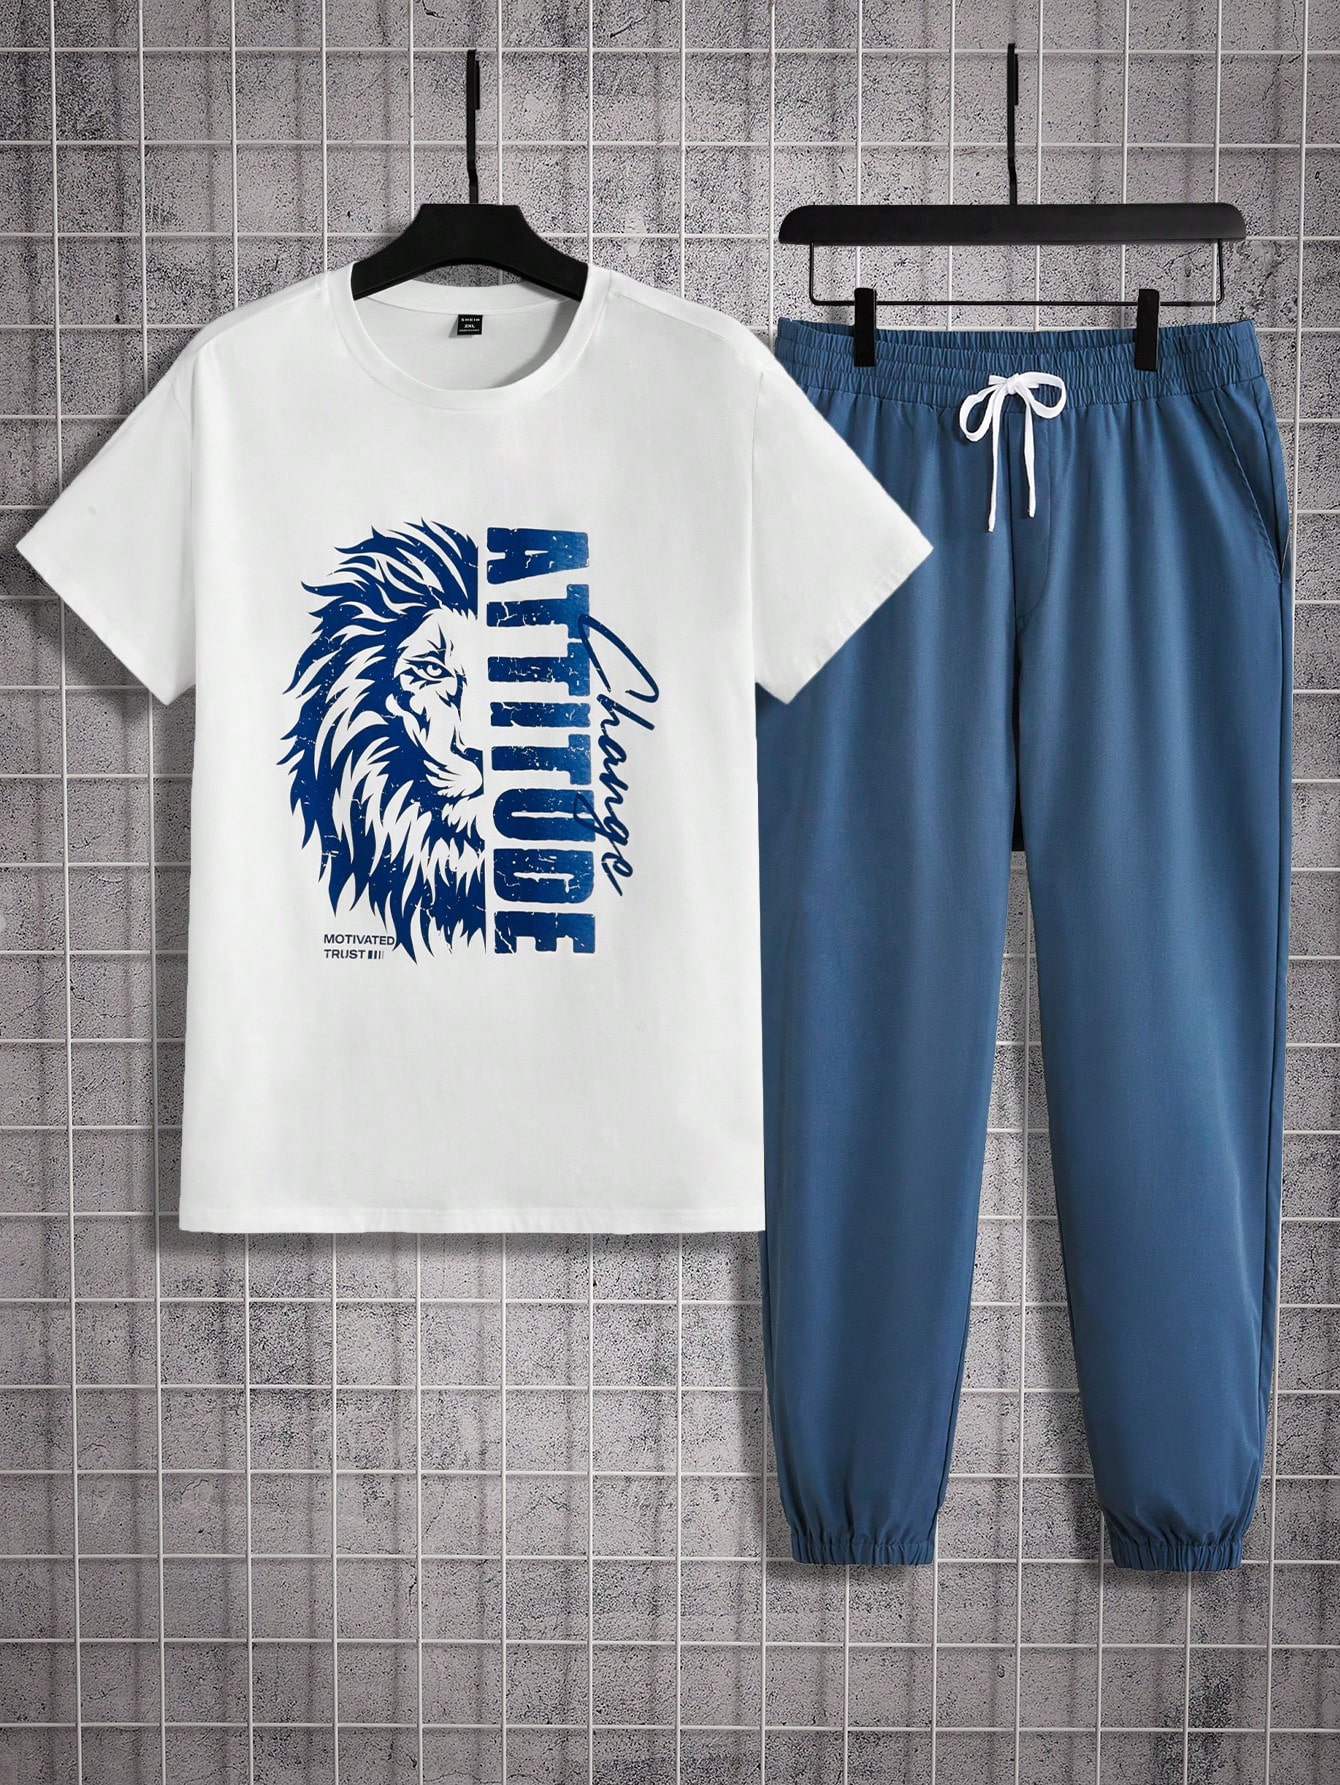 Мужская футболка и спортивные штаны с короткими рукавами и принтом льва и букв Manfinity Homme больших размеров, синий и белый спортивный костюм мужской из 2 предметов повседневная футболка и шорты модная уличная одежда большого размера лето